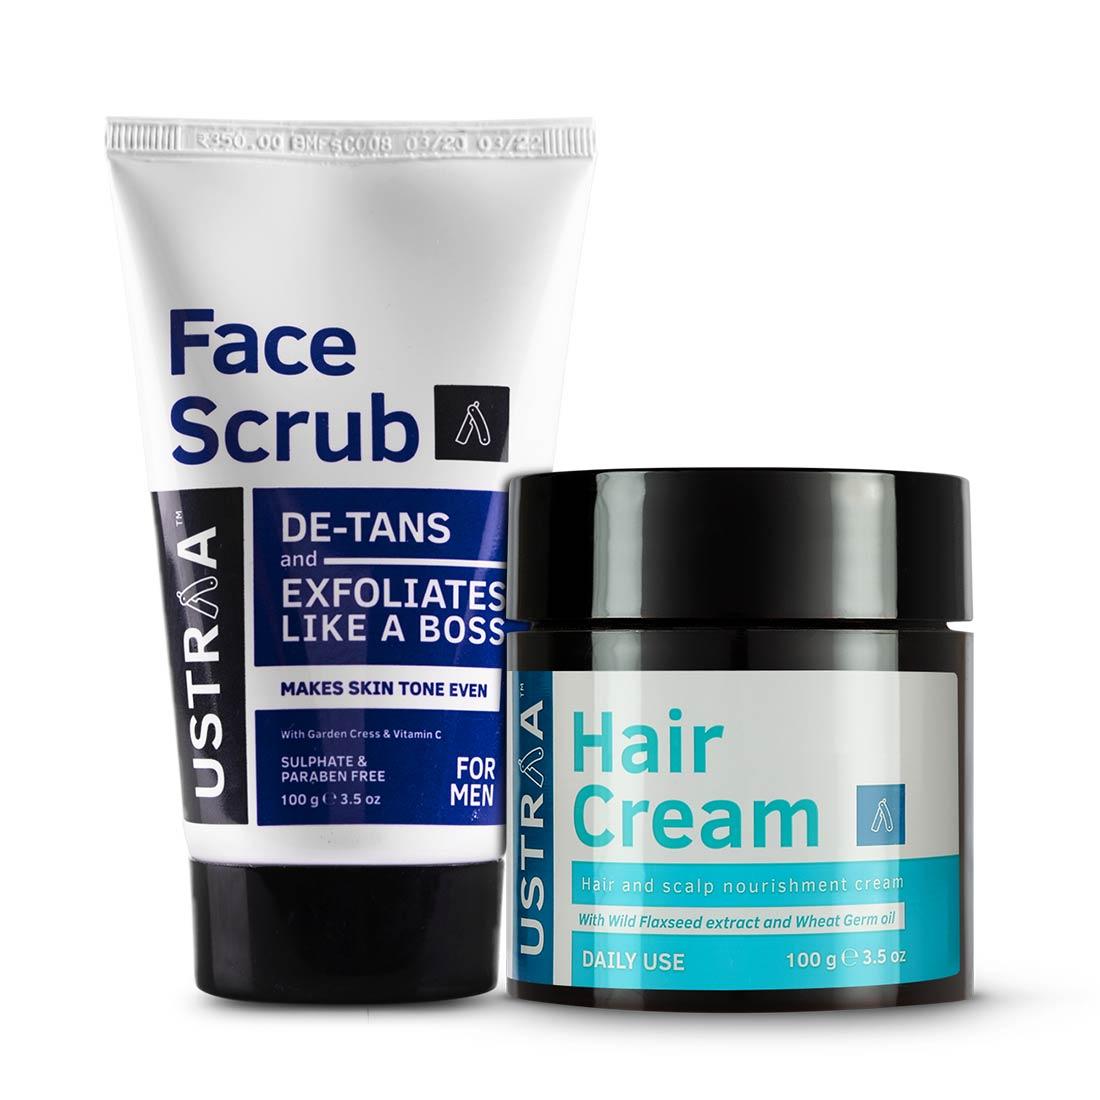 De Tan Face Scrub and Hair Cream - Daily Use